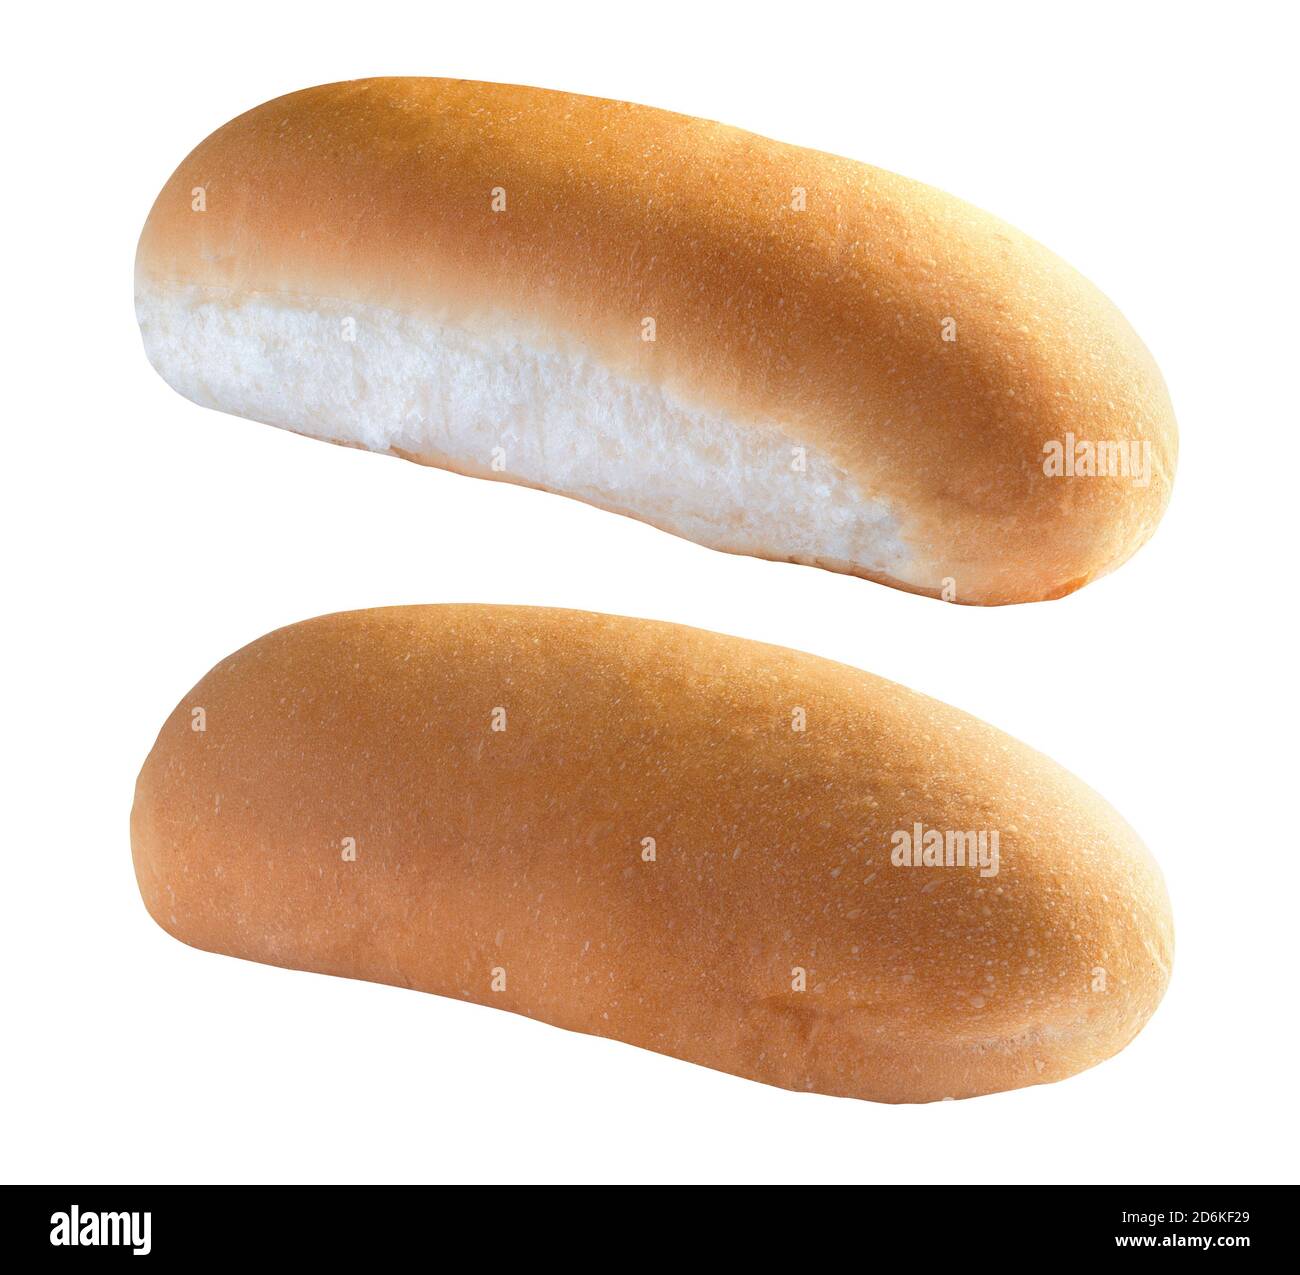 Hot dog bun on white background Stock Photo